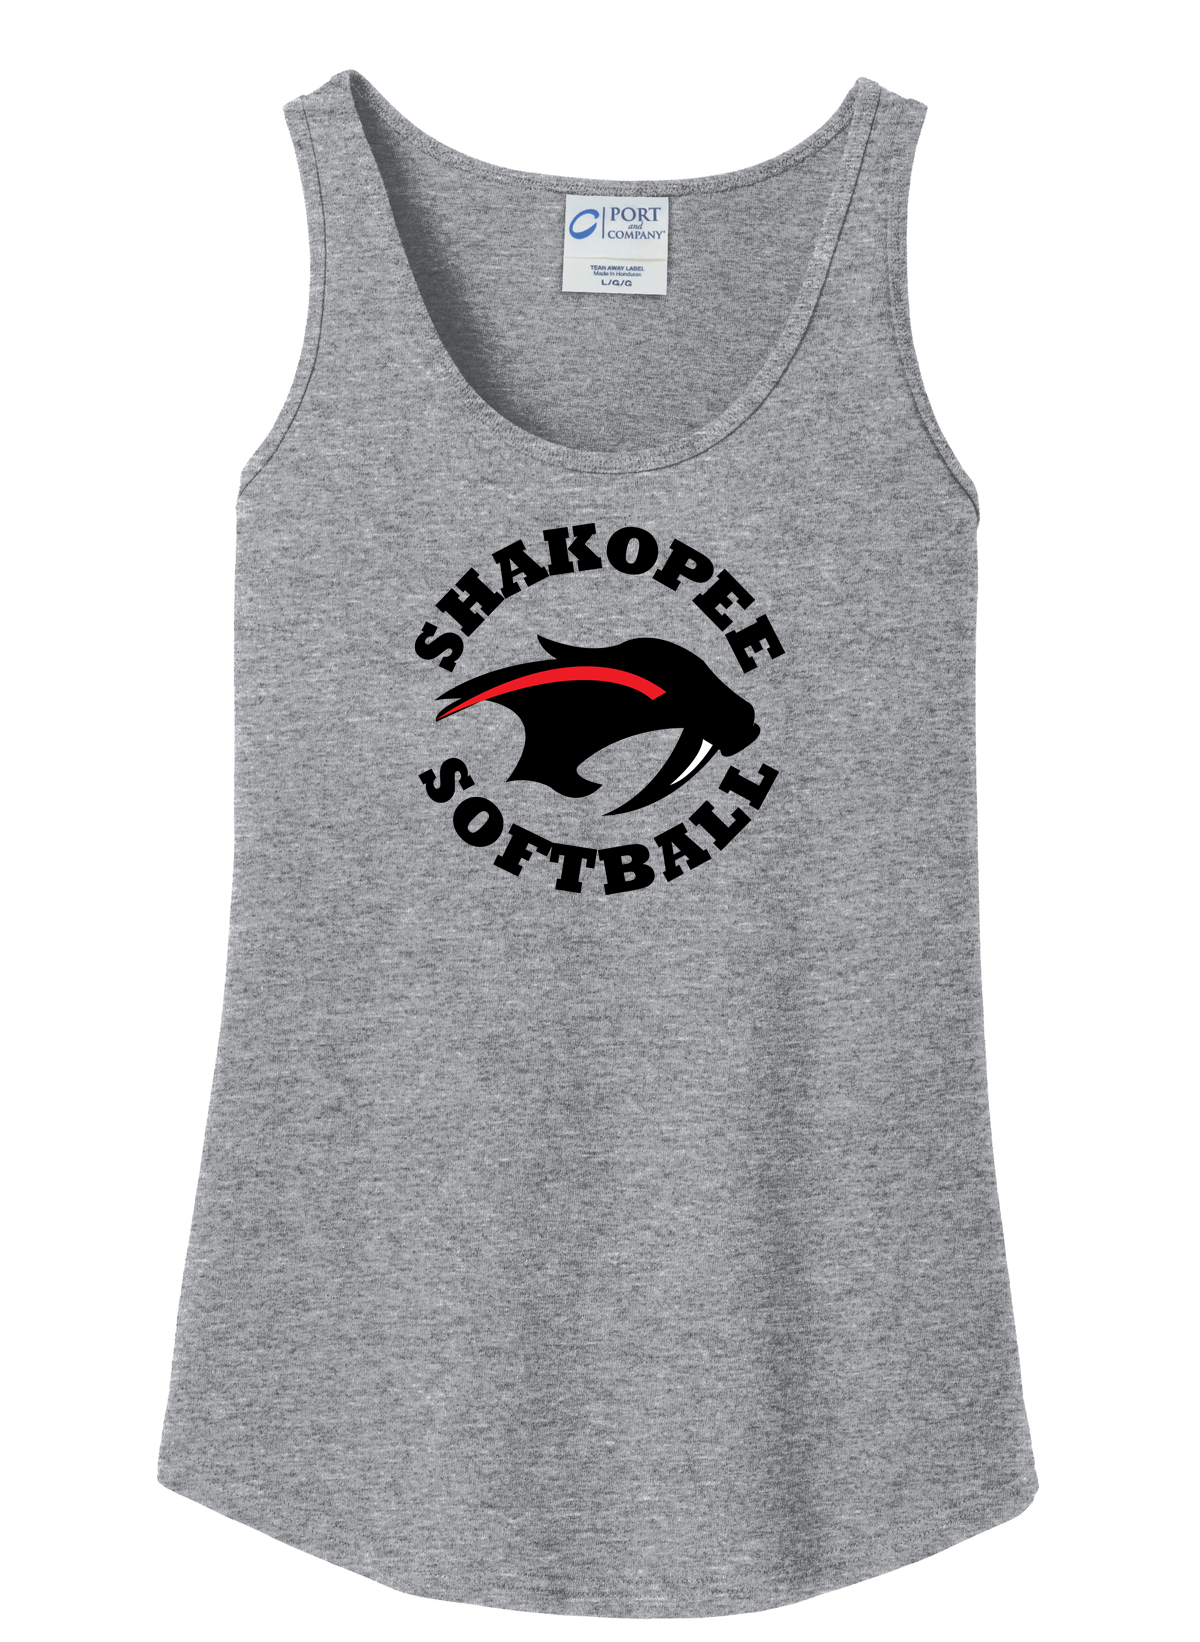 Shakopee Softball Women's Tank Top